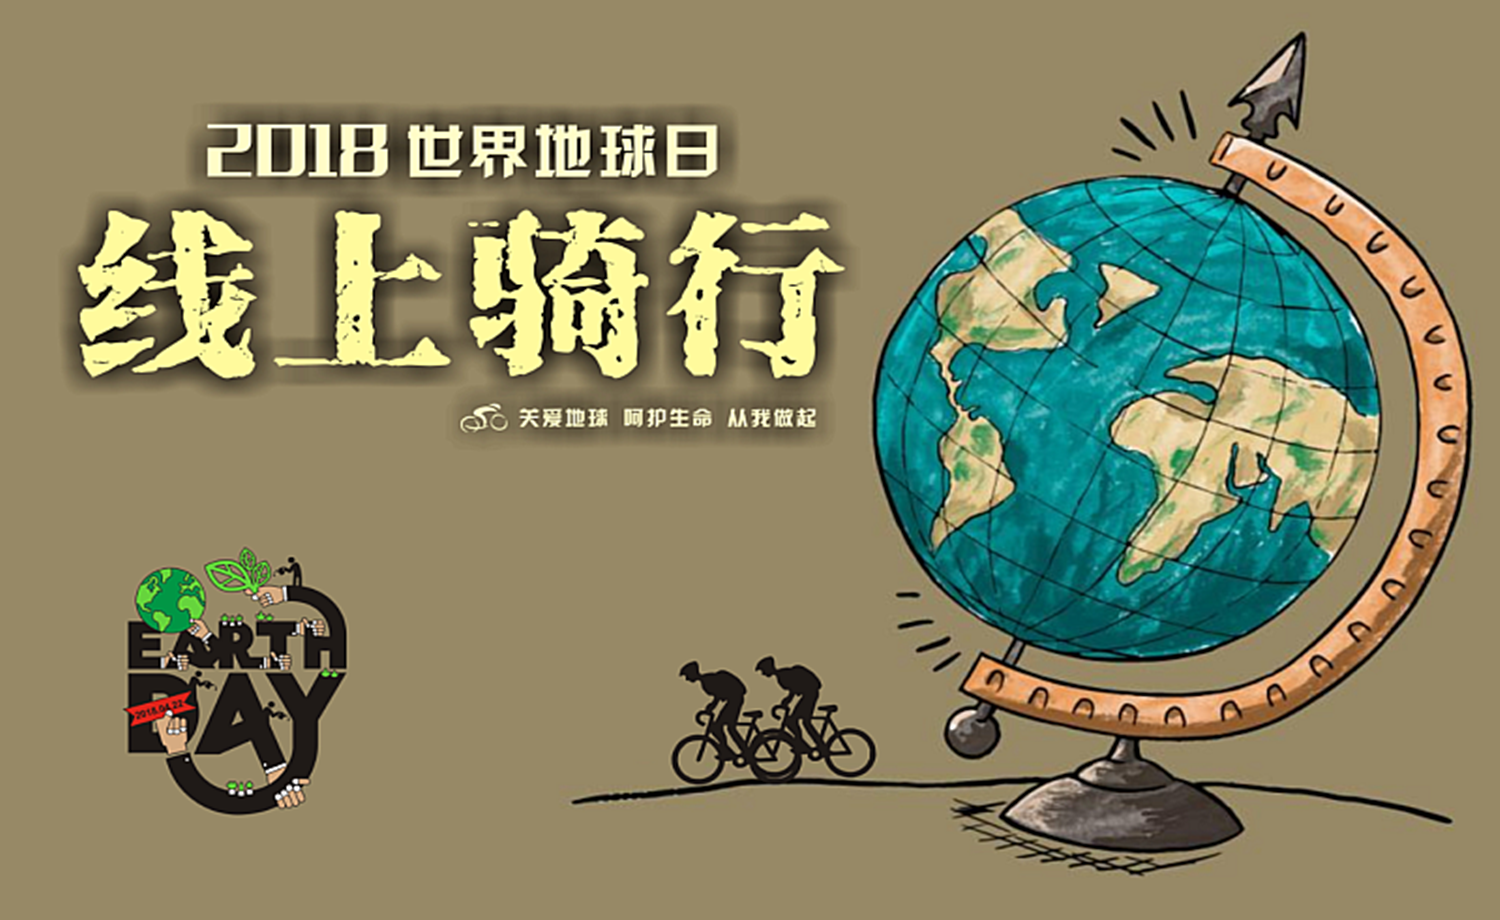 2018 世界地球日线上骑行赛